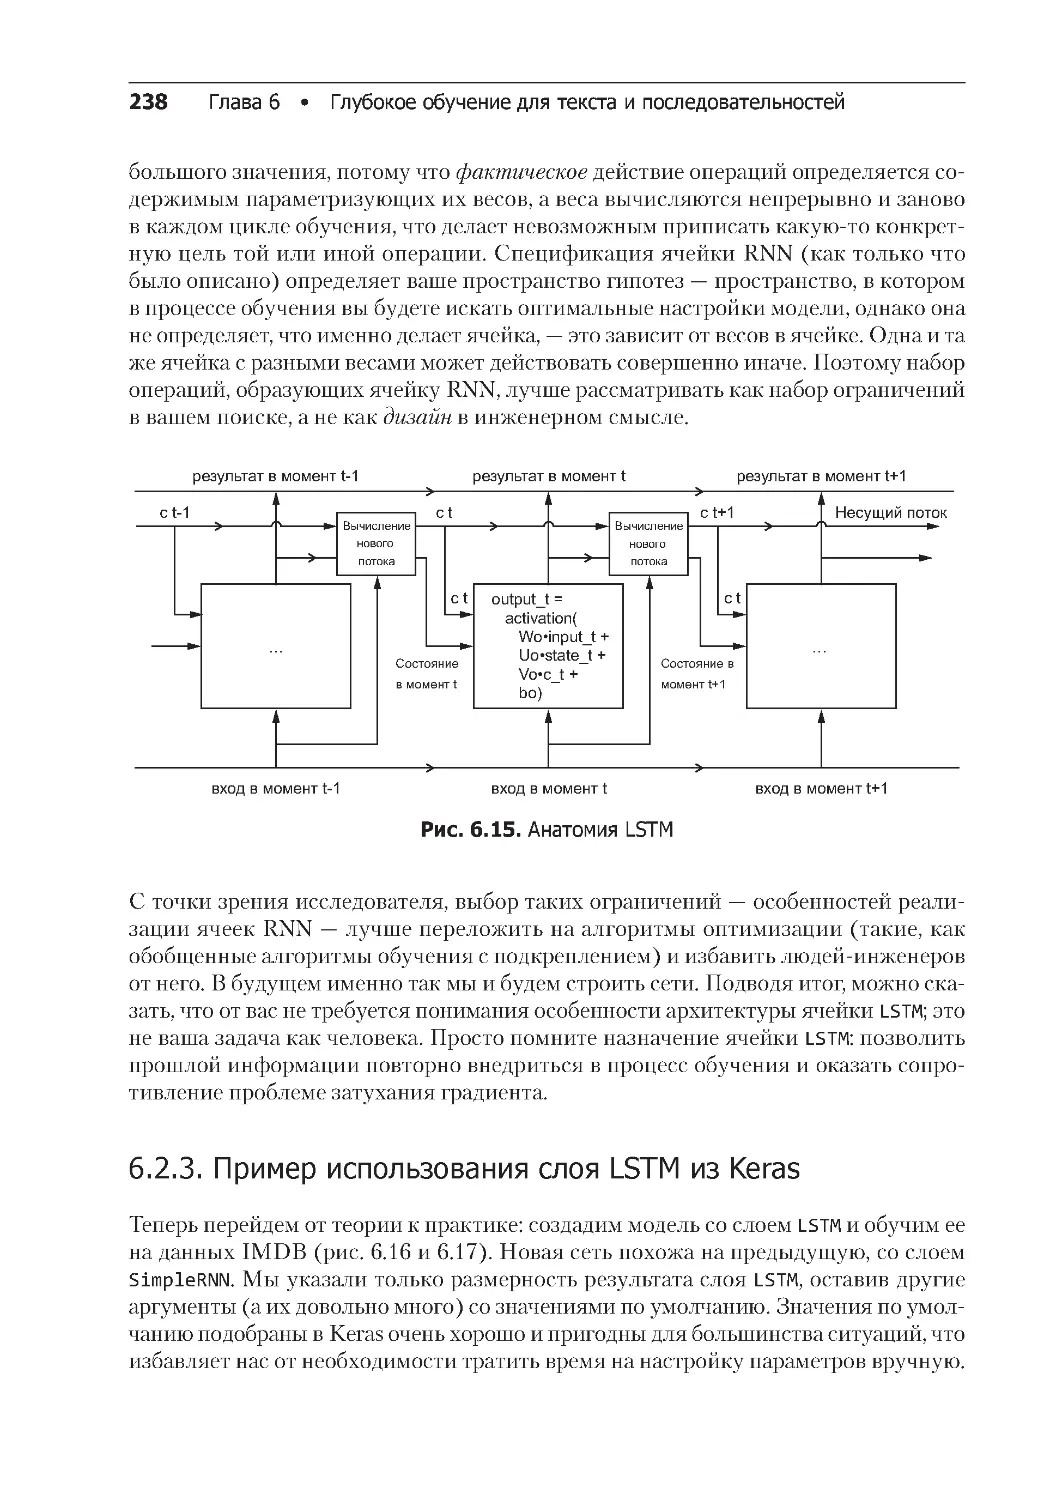 ﻿6.2.3. Пример использования слоя LSTM из Kera